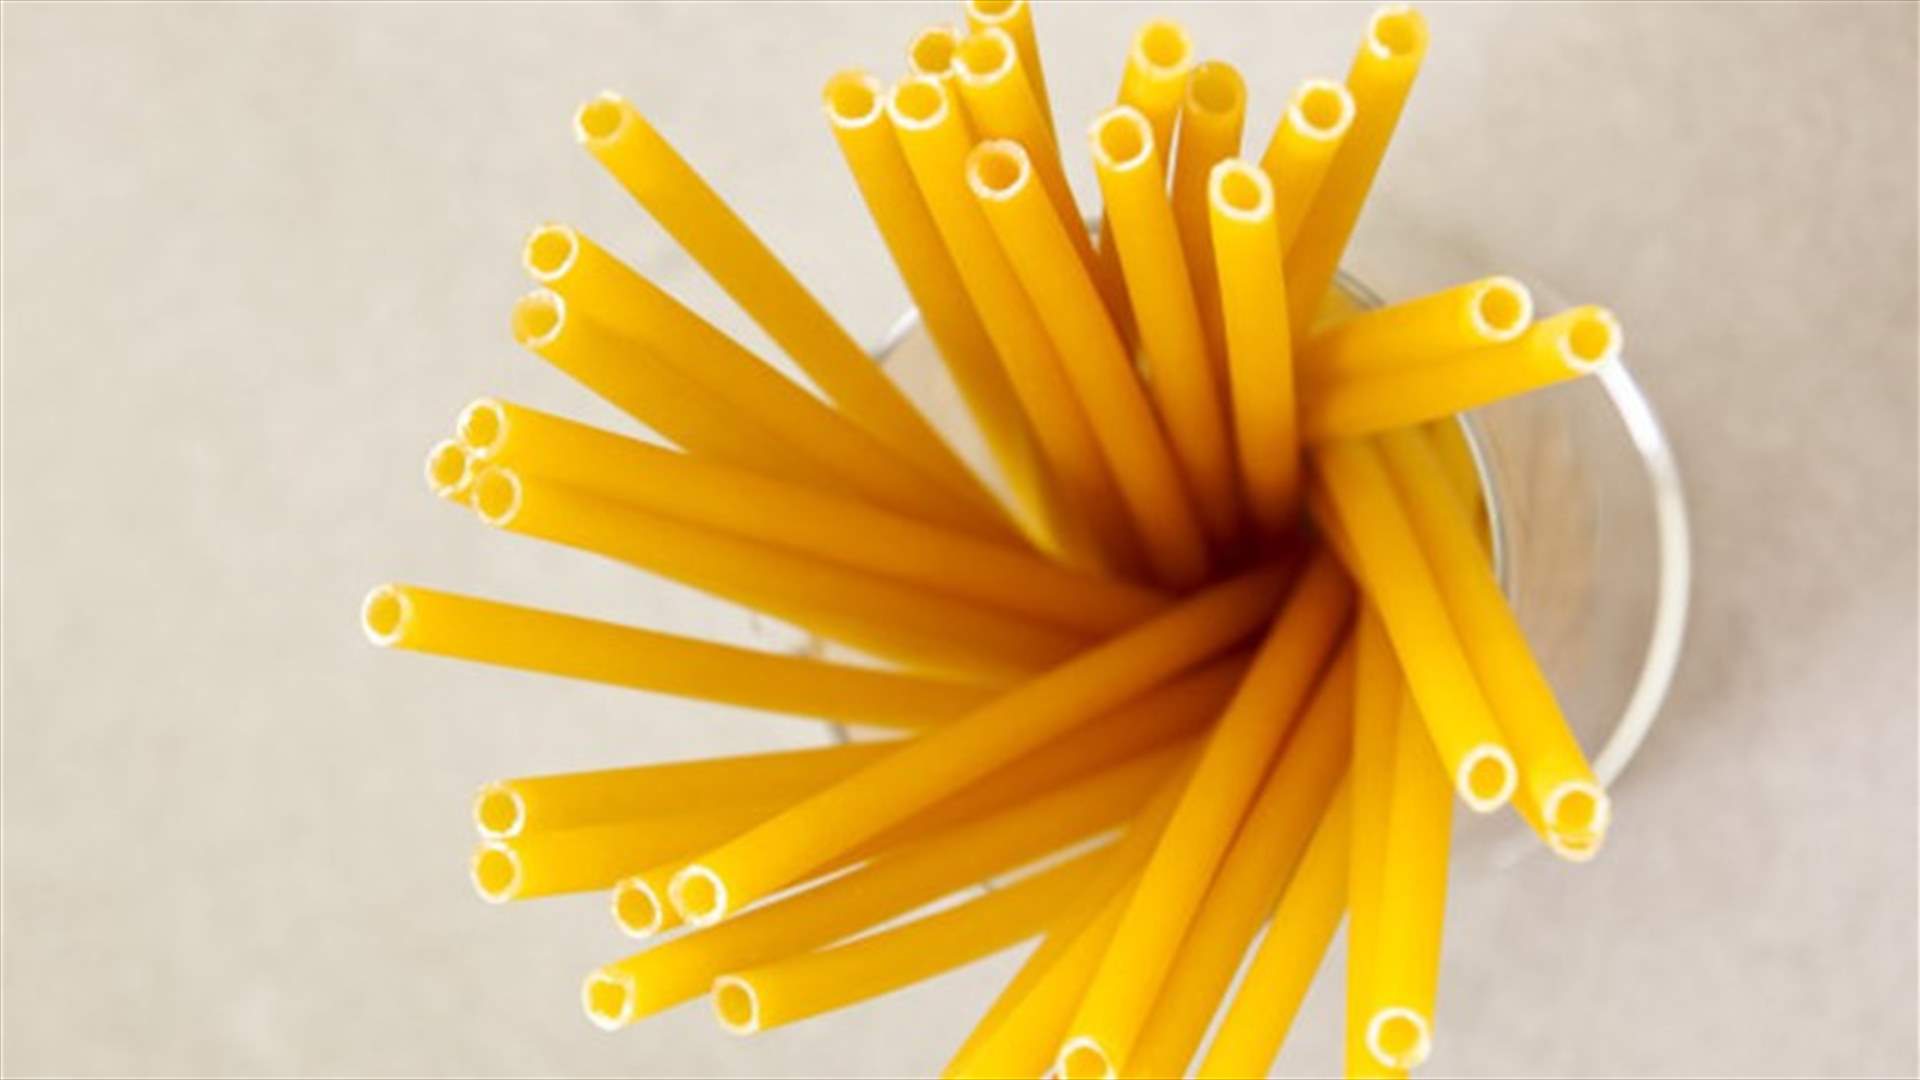 الحانات في إيطاليا تحارب البلاستيك باستخدام القش المصنوع من المعكرونة! (صورة)